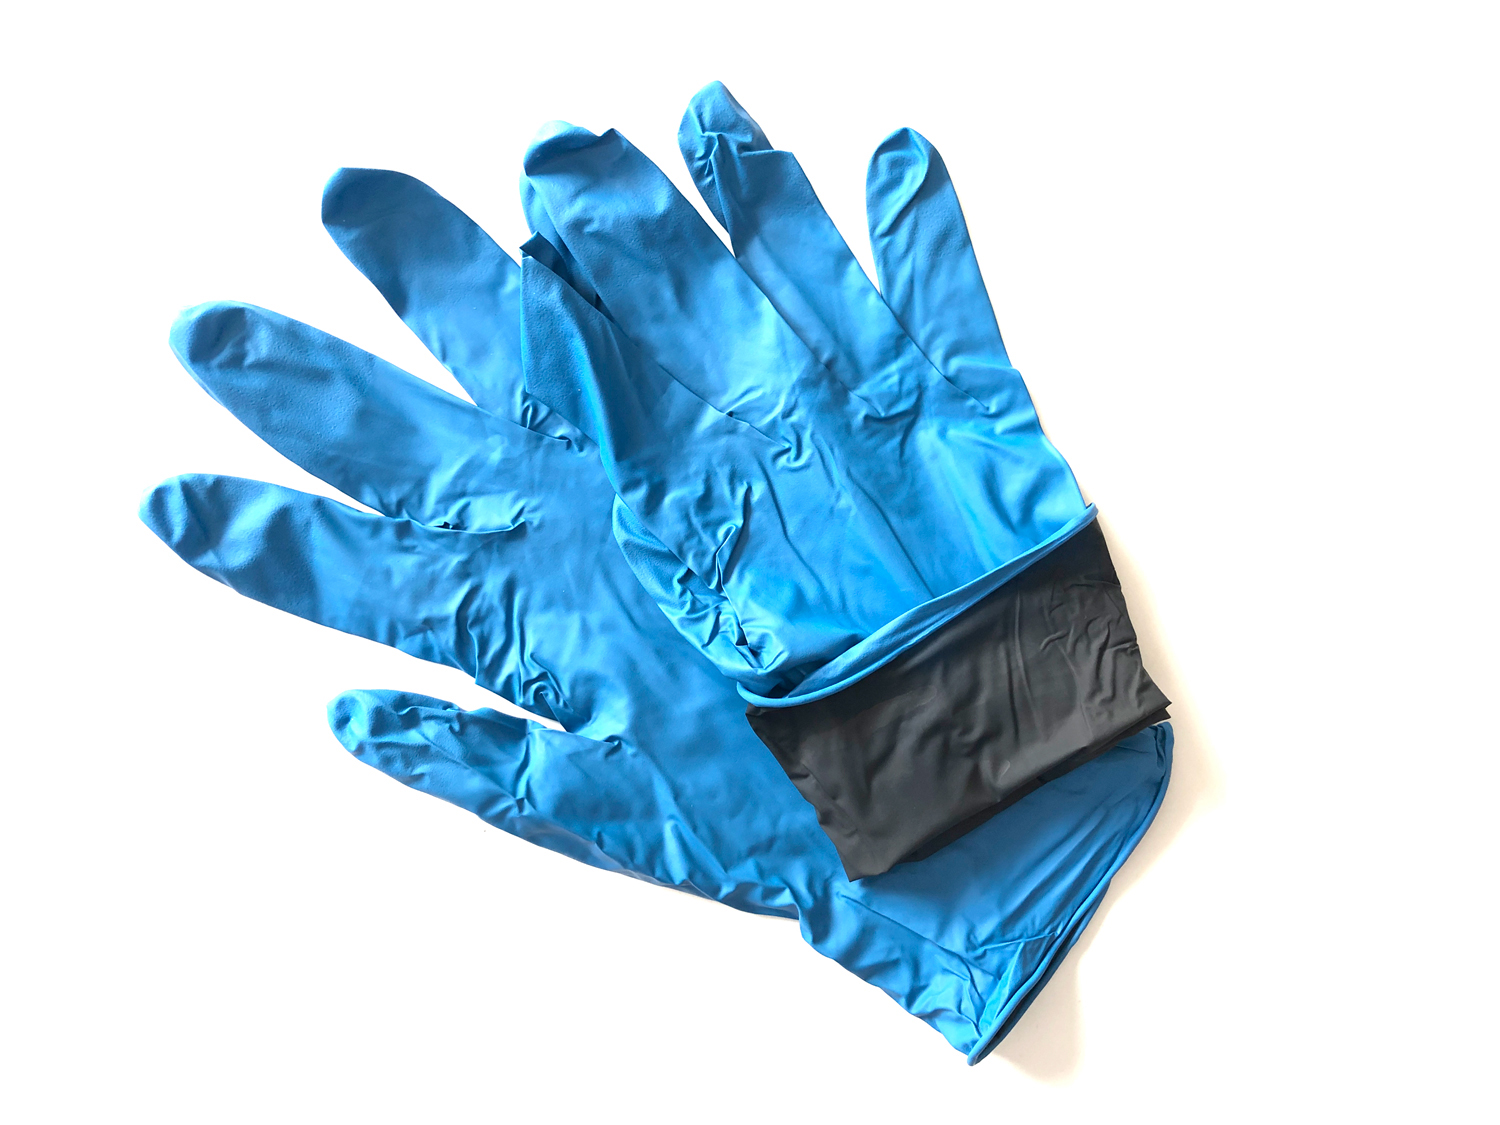 NEW! Nitrile gloves - detectable